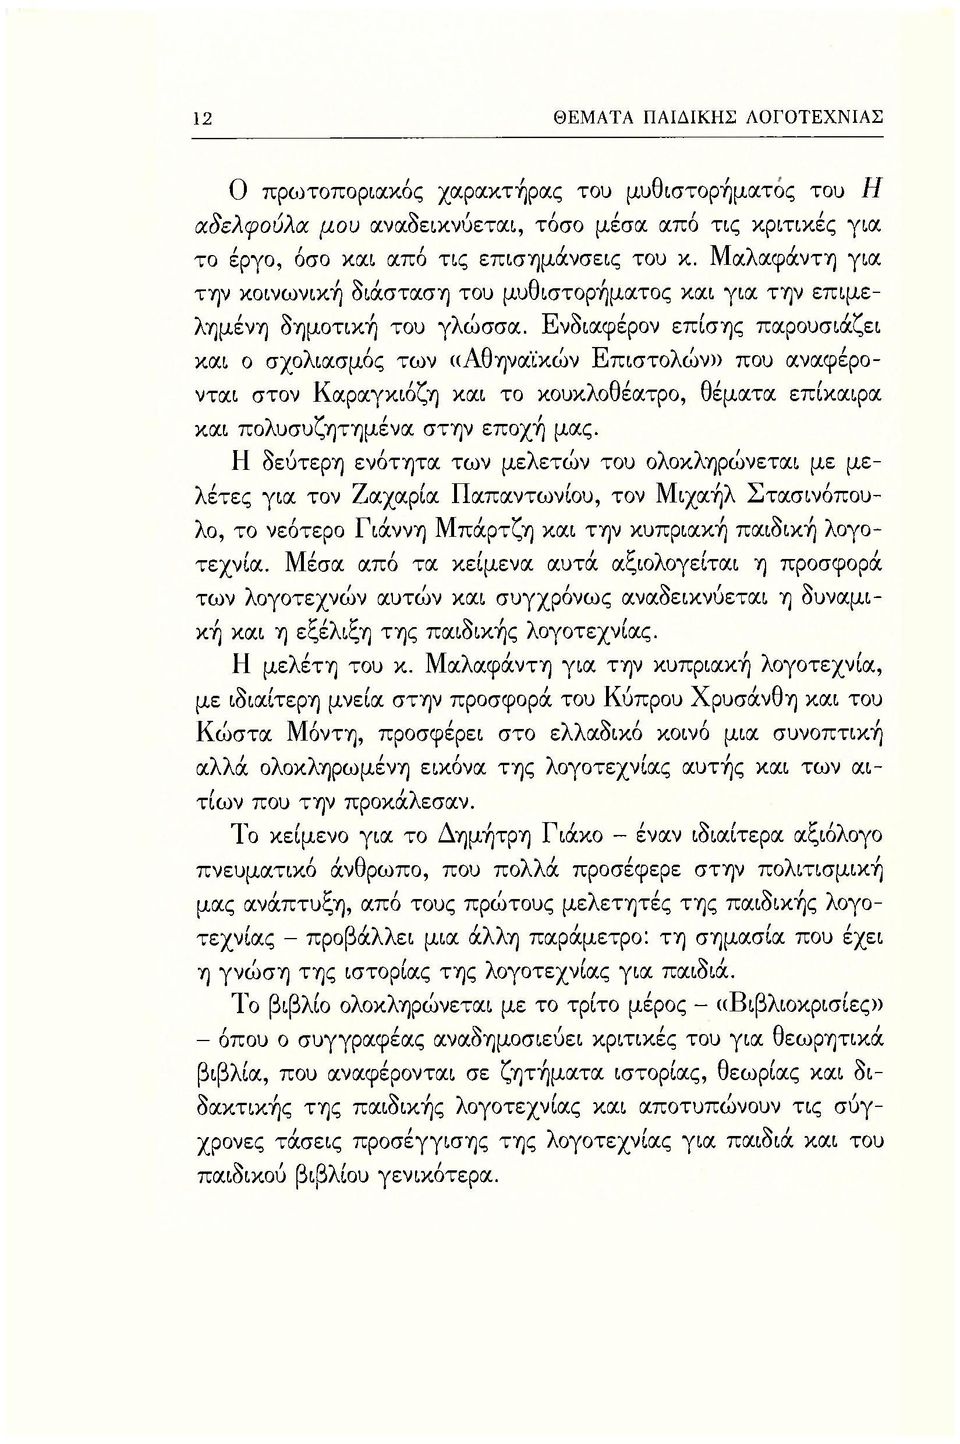 Ενδιαφέρον επίσης παρουσιάζει και ο σχολιασμός των ((Αθηναϊκών Επιστολών» που αναφέρονται στον Καραγκιόζη και το κουκλοθέατρο, θέματα επίκαιρα και πολυσυζητημένα στην εποχή μας.